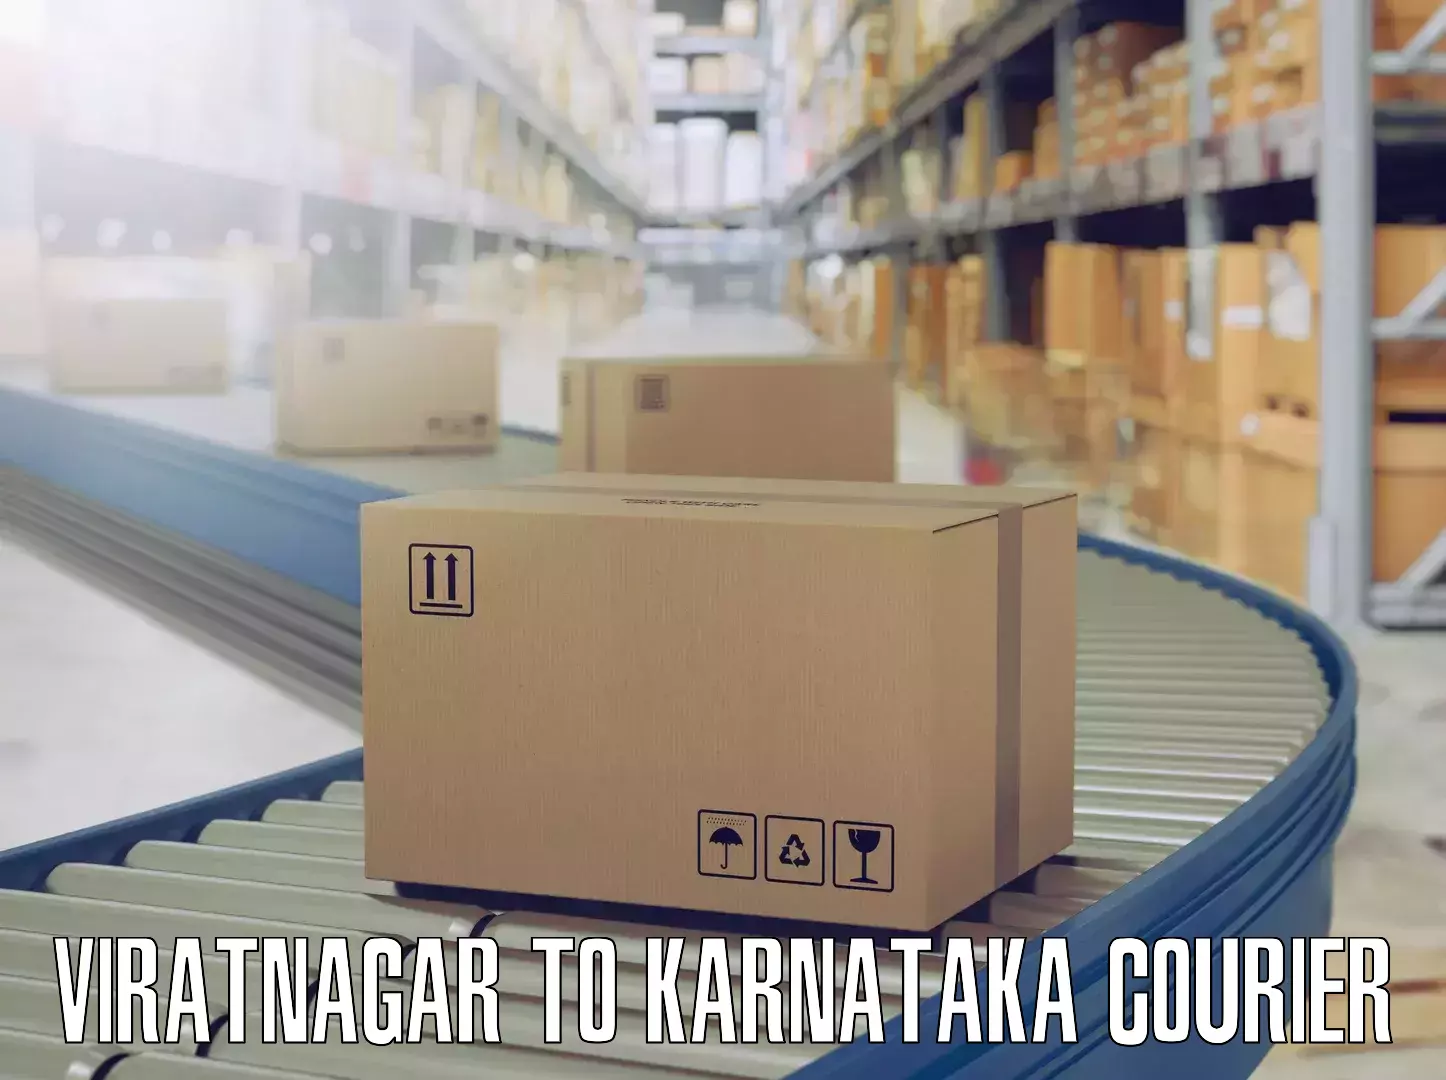 Custom relocation solutions Viratnagar to Karnataka